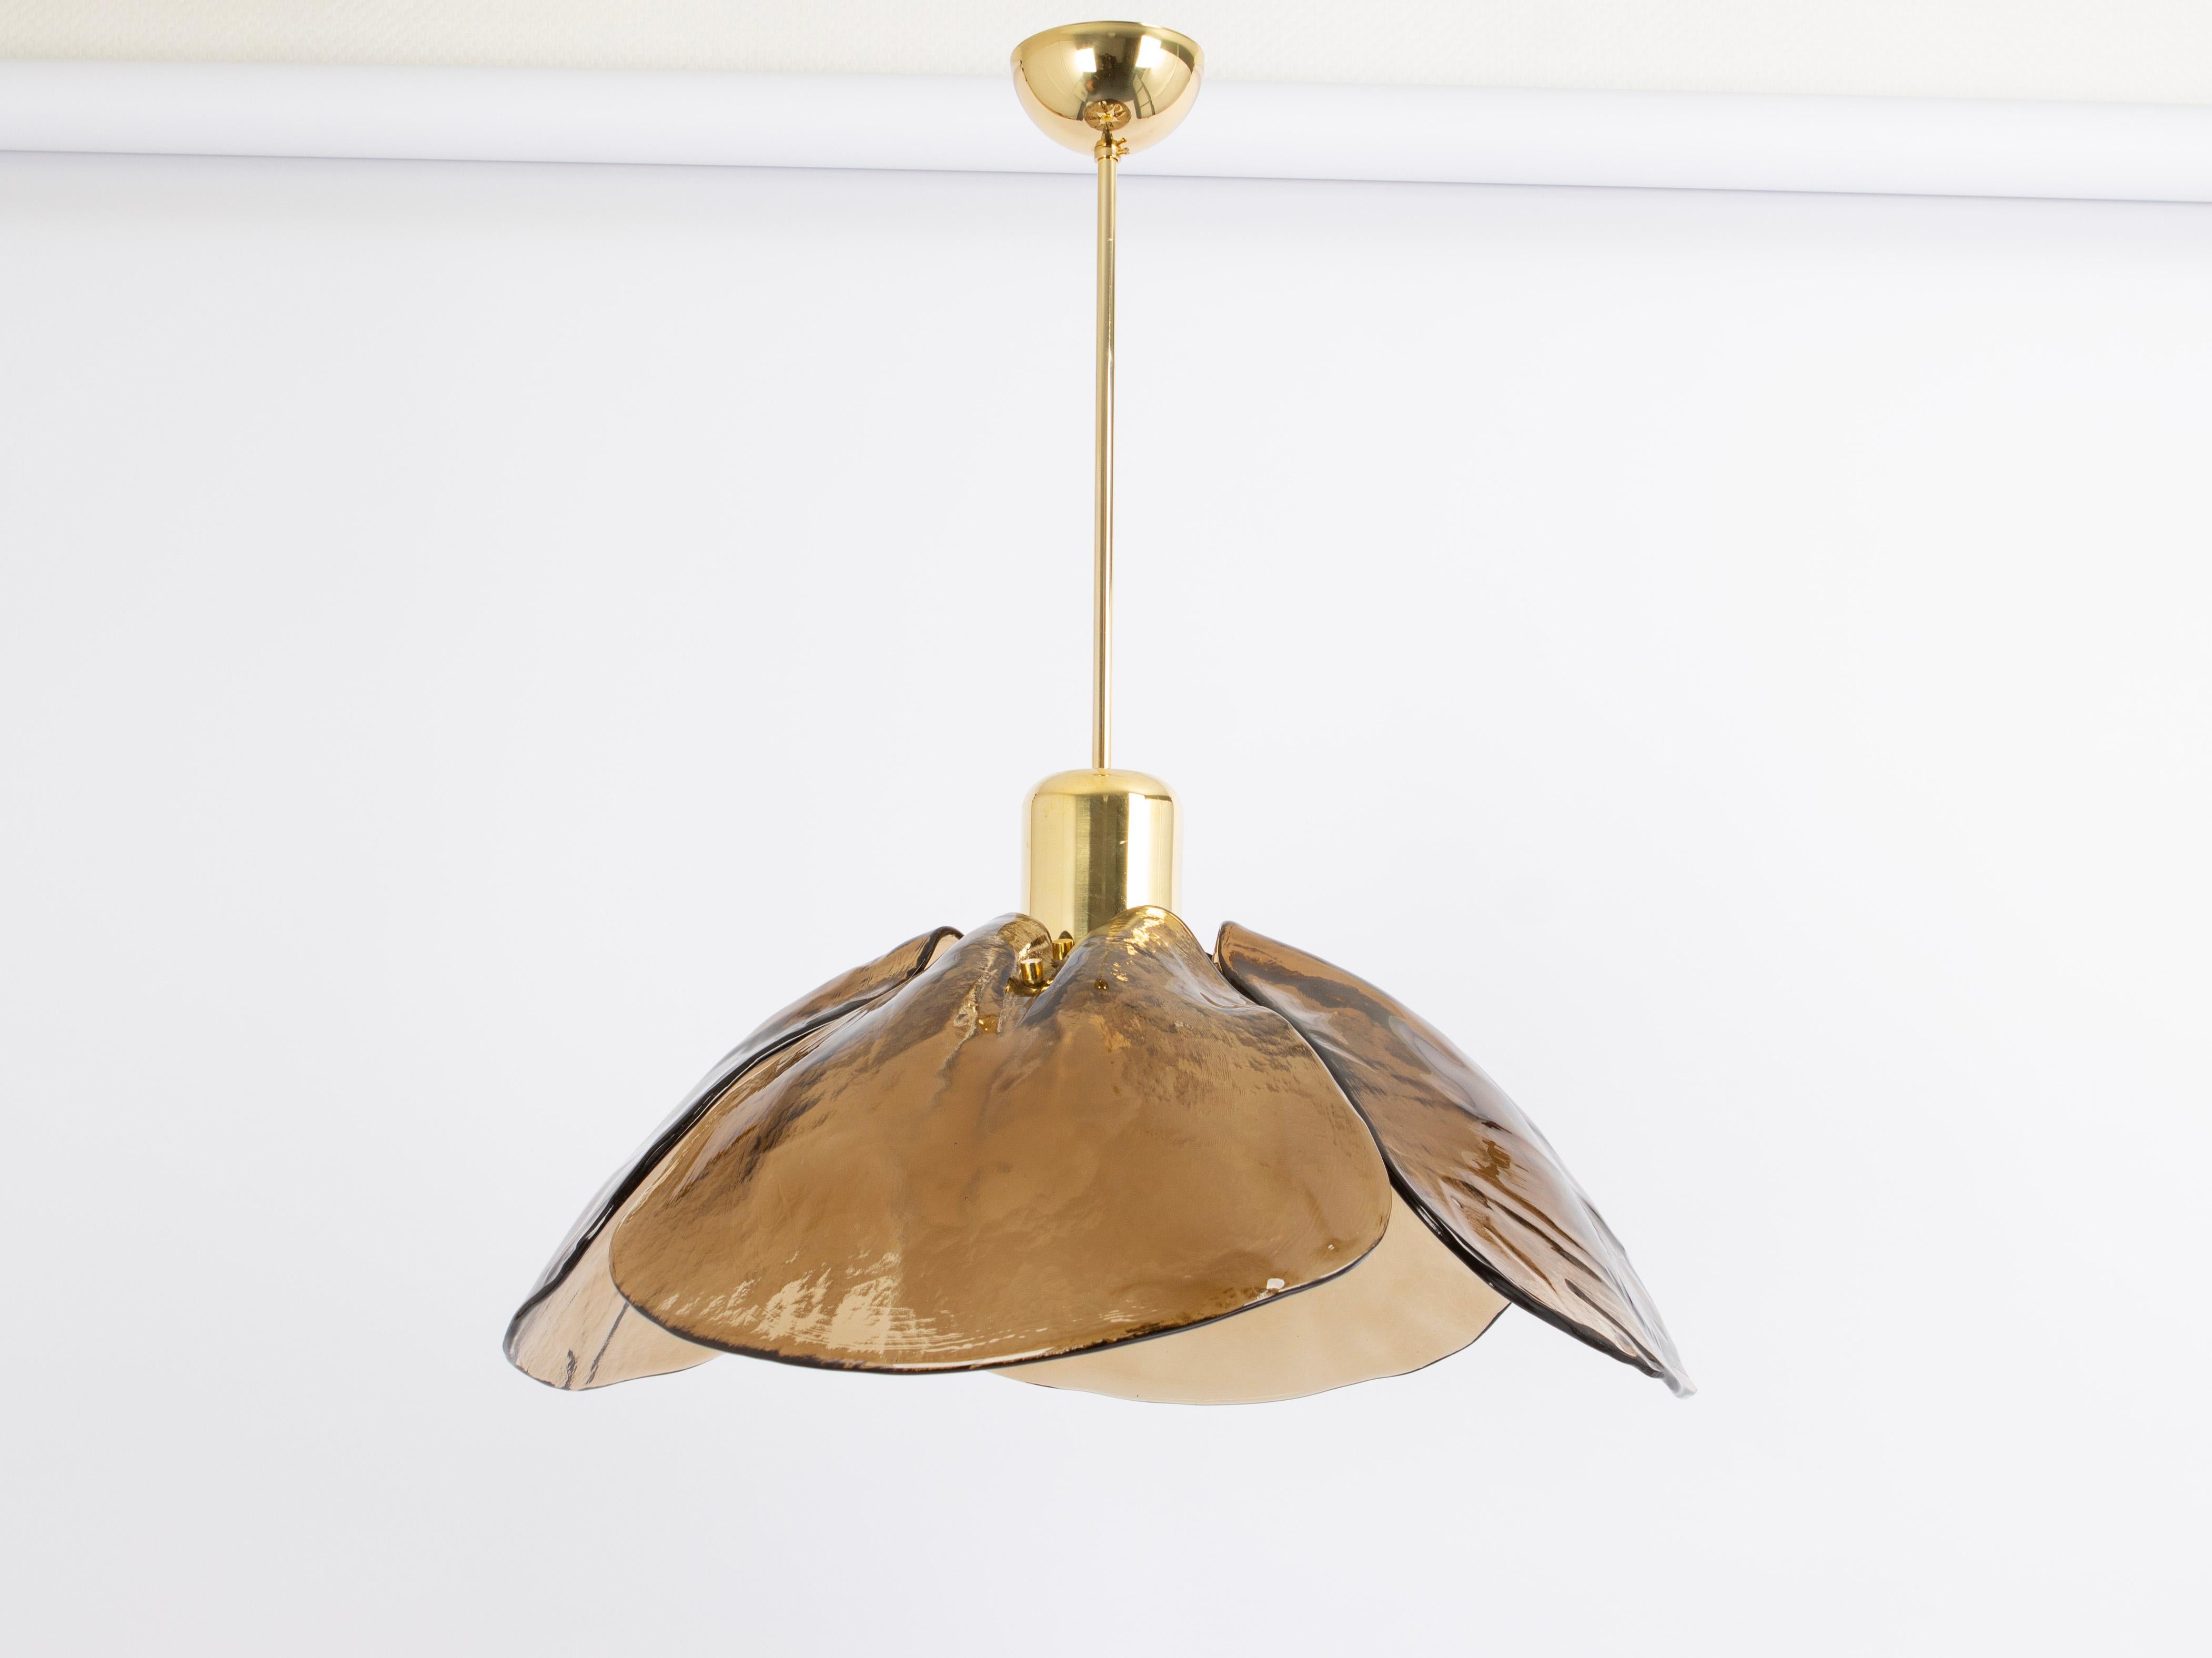 Un superbe lustre en verre brun de Murano conçu par Kalmar, Autriche, fabriqué dans les années 1960.
Le lustre est composé de 4 éléments épais en verre de Murano fixés à un cadre en laiton.

De haute qualité et en très bon état. Nettoyé, bien câblé